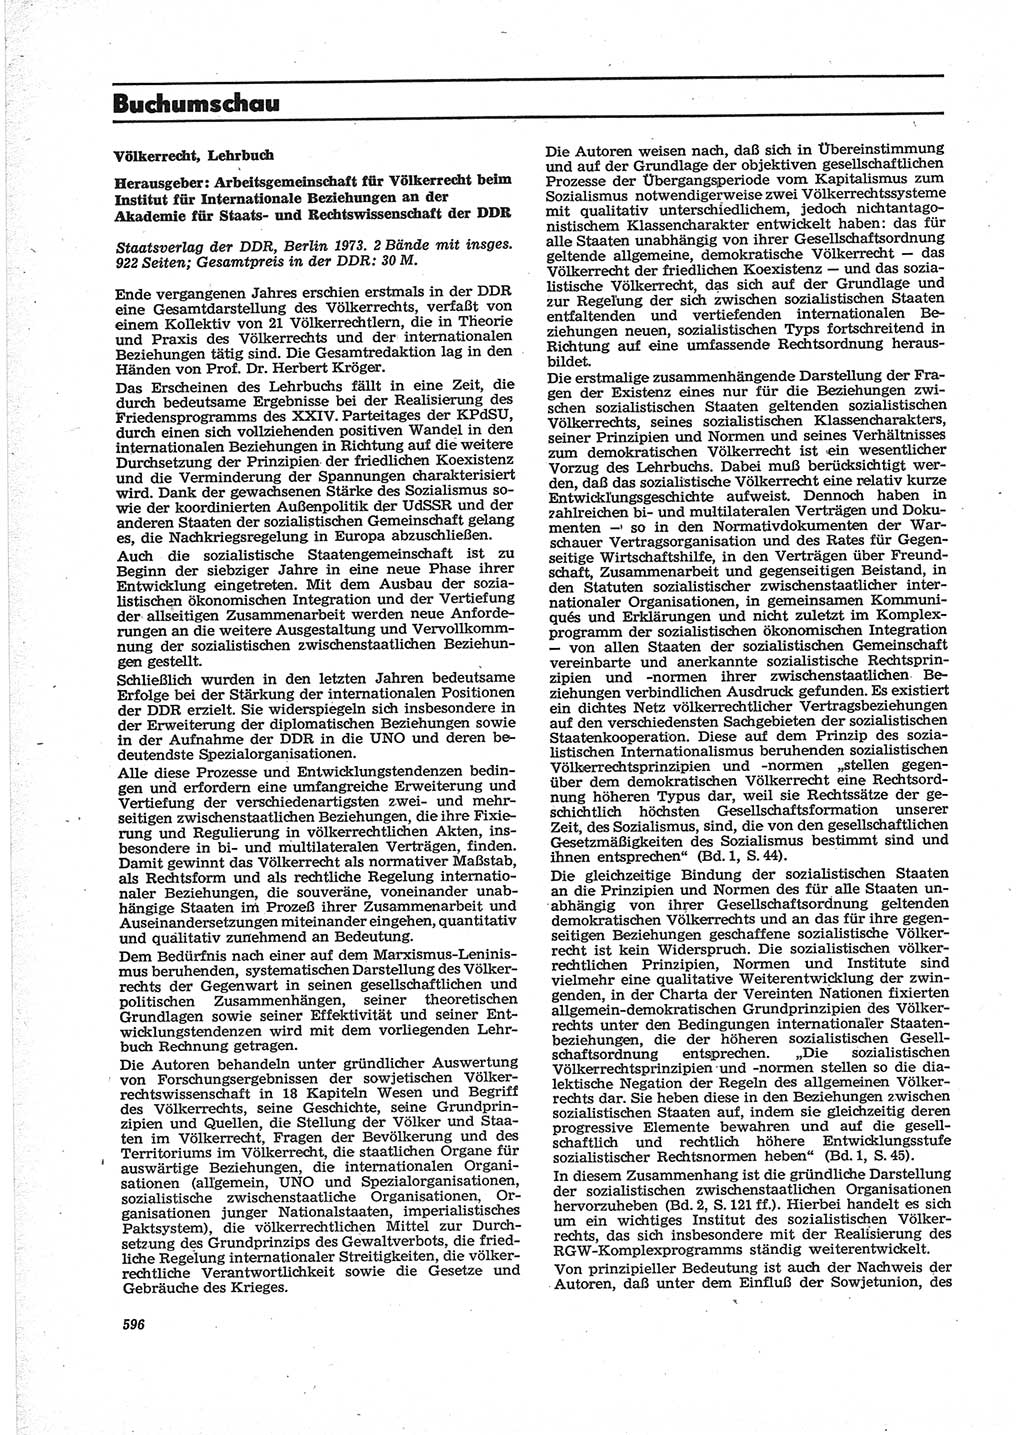 Neue Justiz (NJ), Zeitschrift für Recht und Rechtswissenschaft [Deutsche Demokratische Republik (DDR)], 28. Jahrgang 1974, Seite 596 (NJ DDR 1974, S. 596)